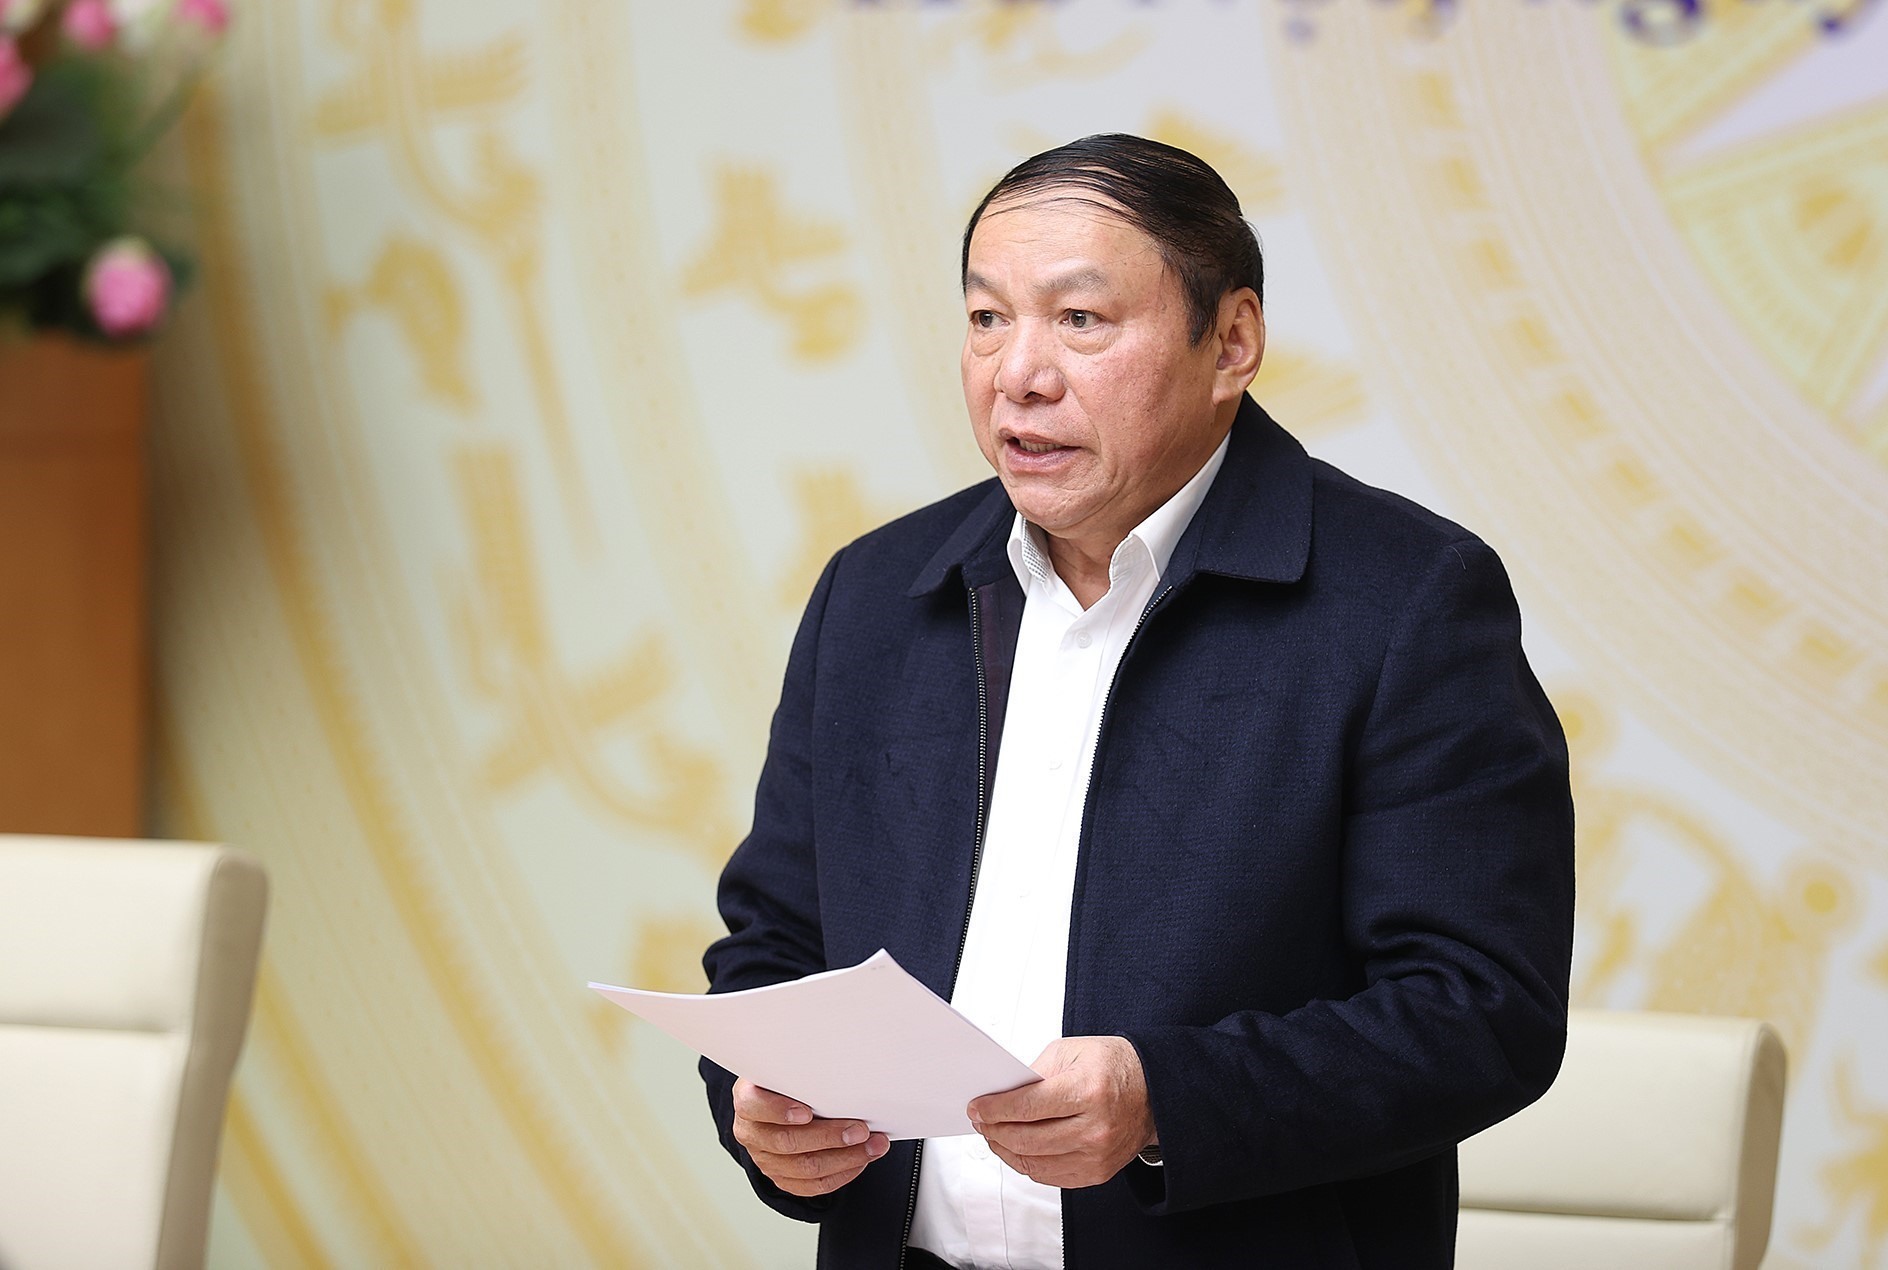 Bộ trưởng Bộ Văn hoá Thể thao và Du lịch Nguyễn Văn Hùng báo cáo tại Hội nghị. Ảnh: Nhật Bắc